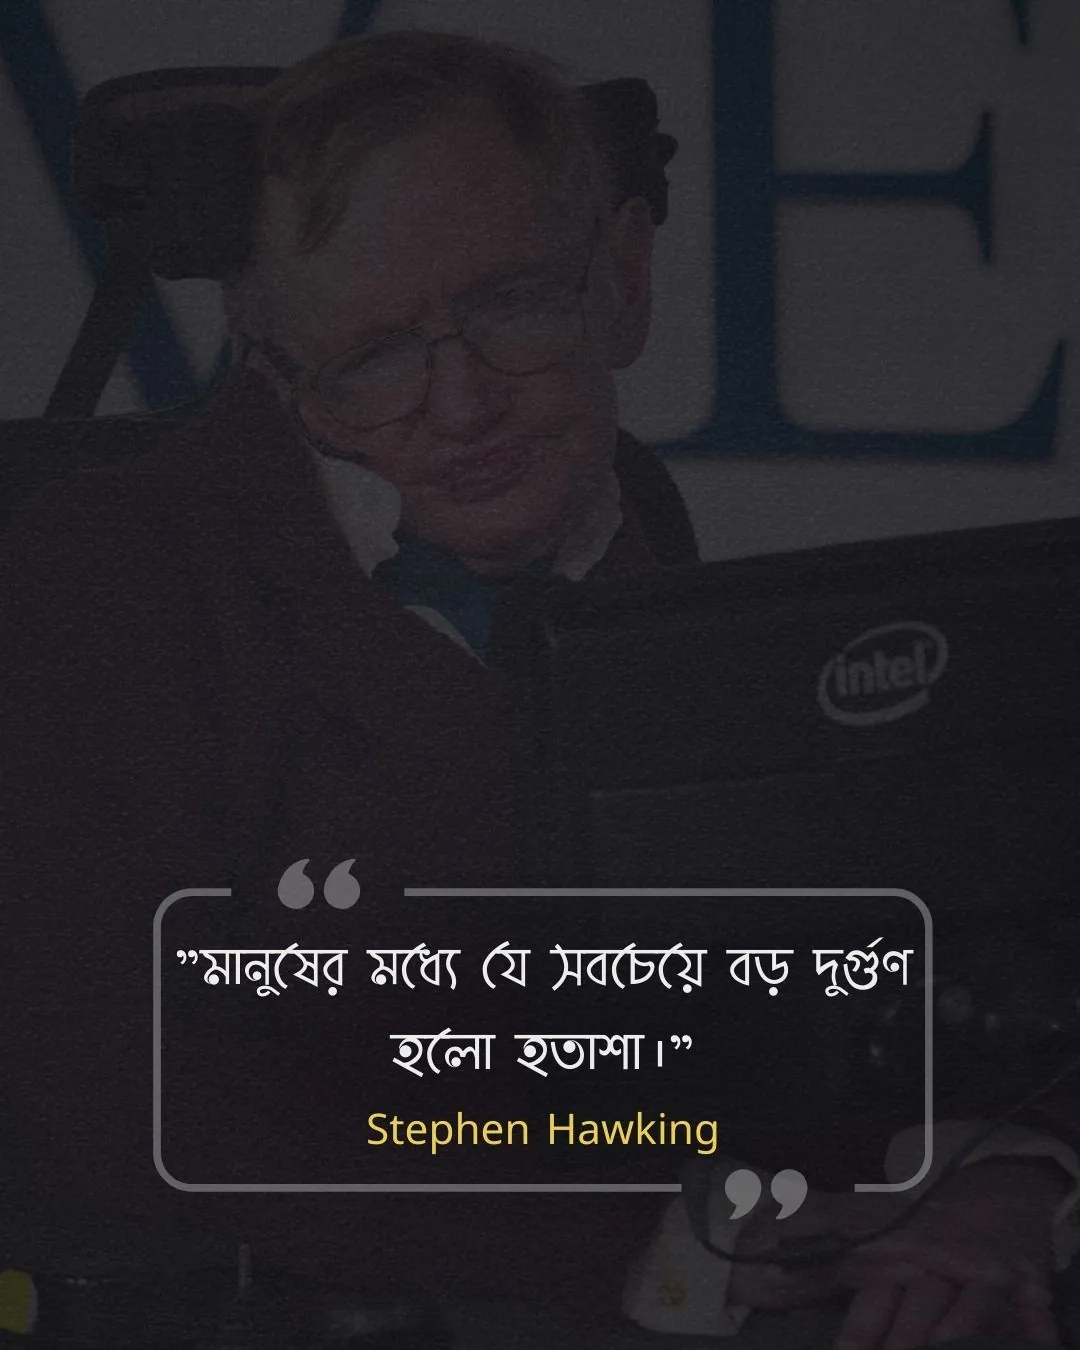 মনুষ্যত্ব নিয়ে উক্তি -Stephen Hawking